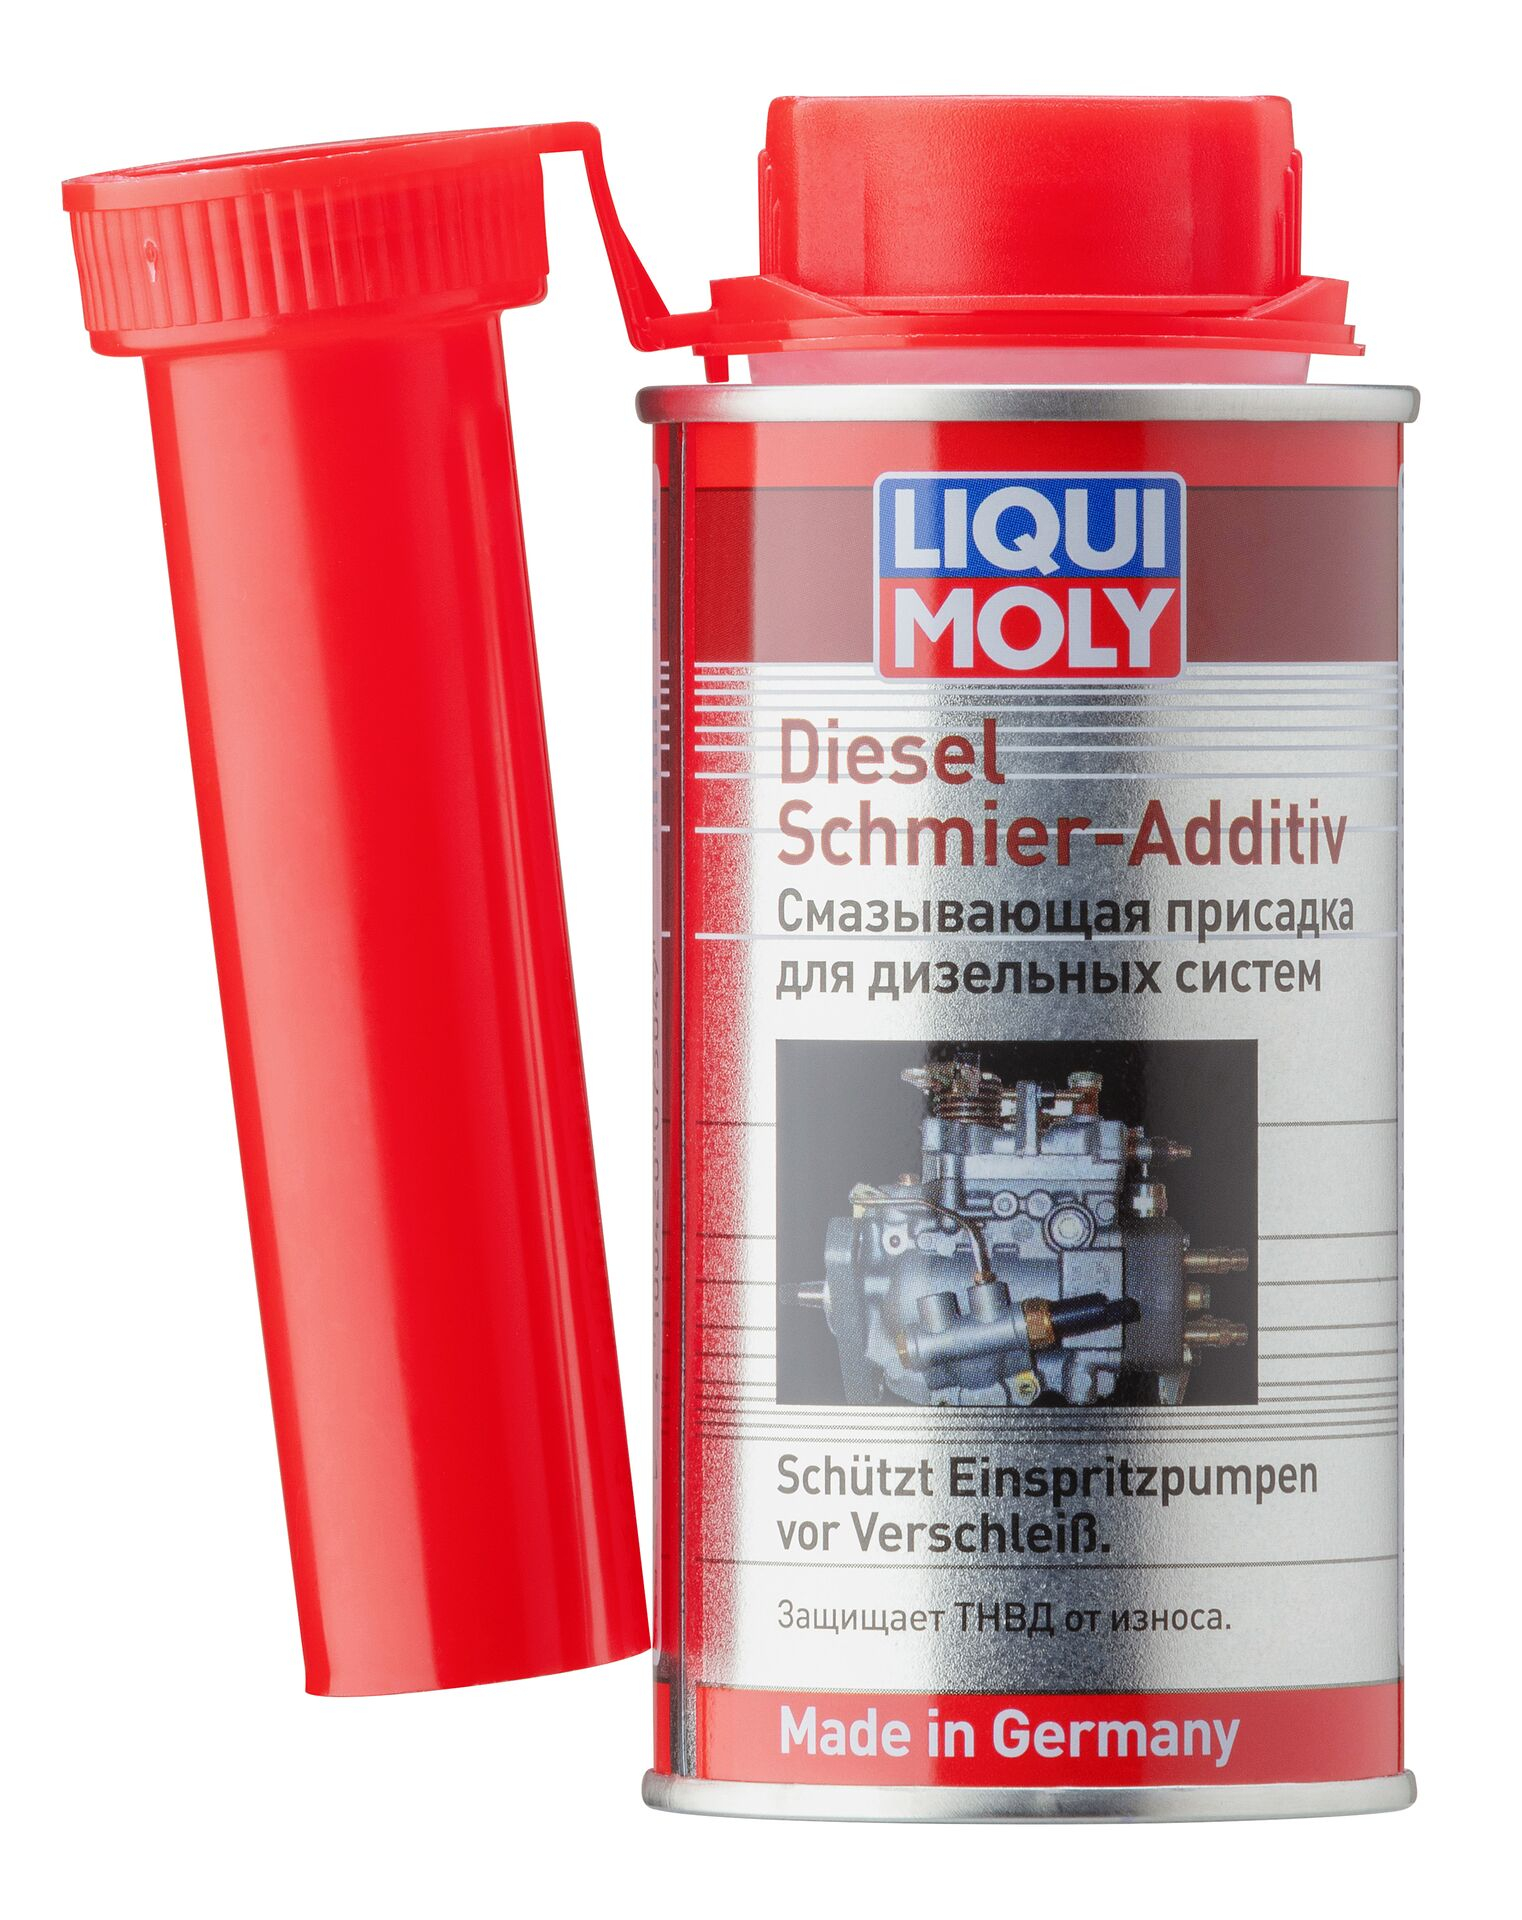  7504 LiquiMoly Смазывающая присадка для дизельных систем Diesel Schmier-Additiv 0,15л 